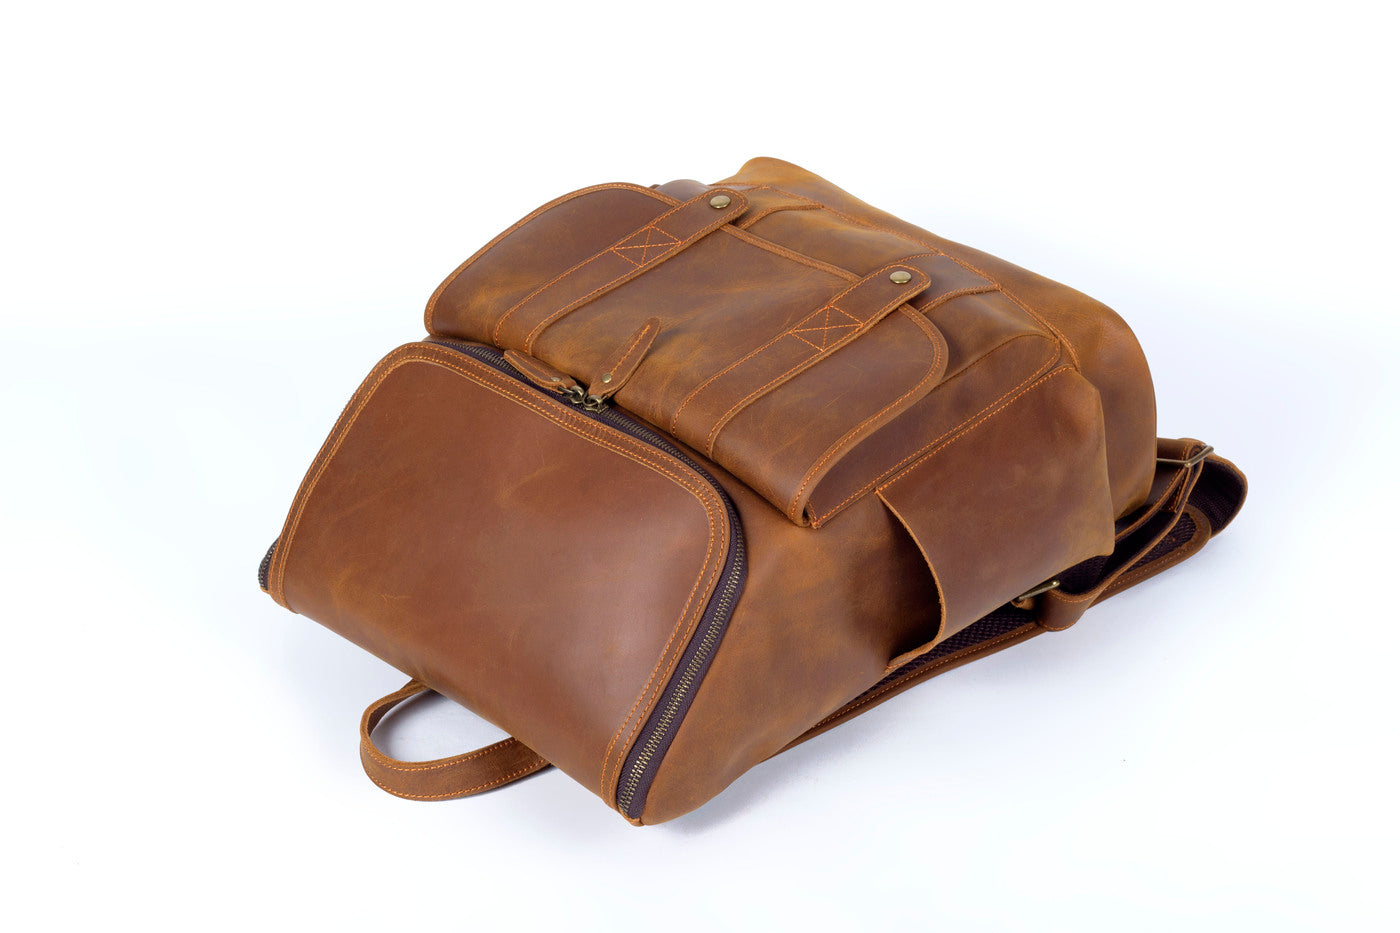 vintage leather knapsack bag 20L with smart side-pockets and anti-theft back pocket